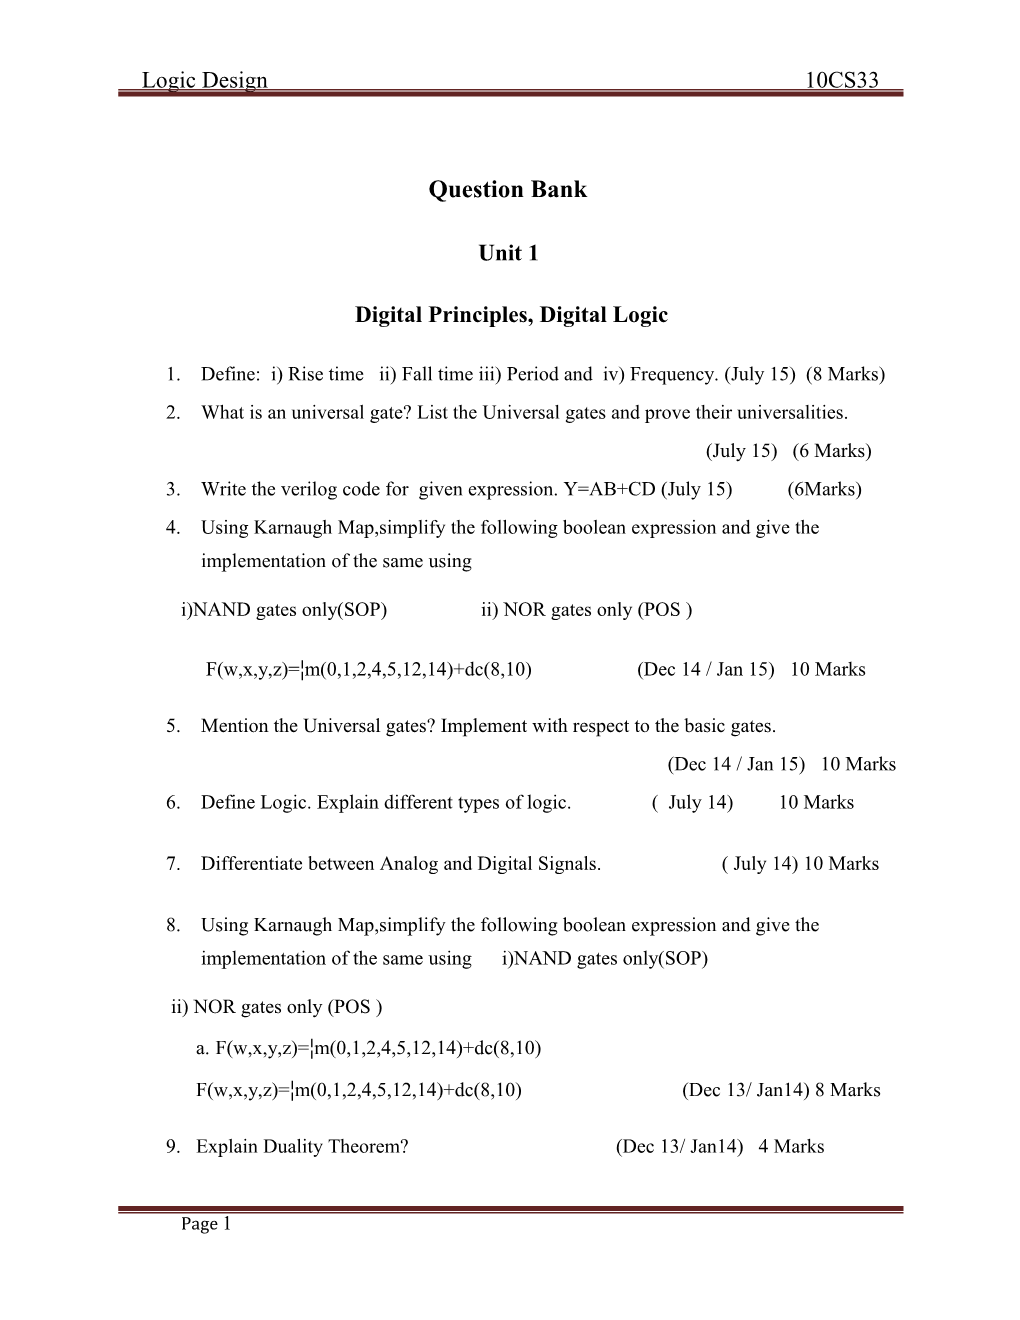 Digital Principles, Digital Logic